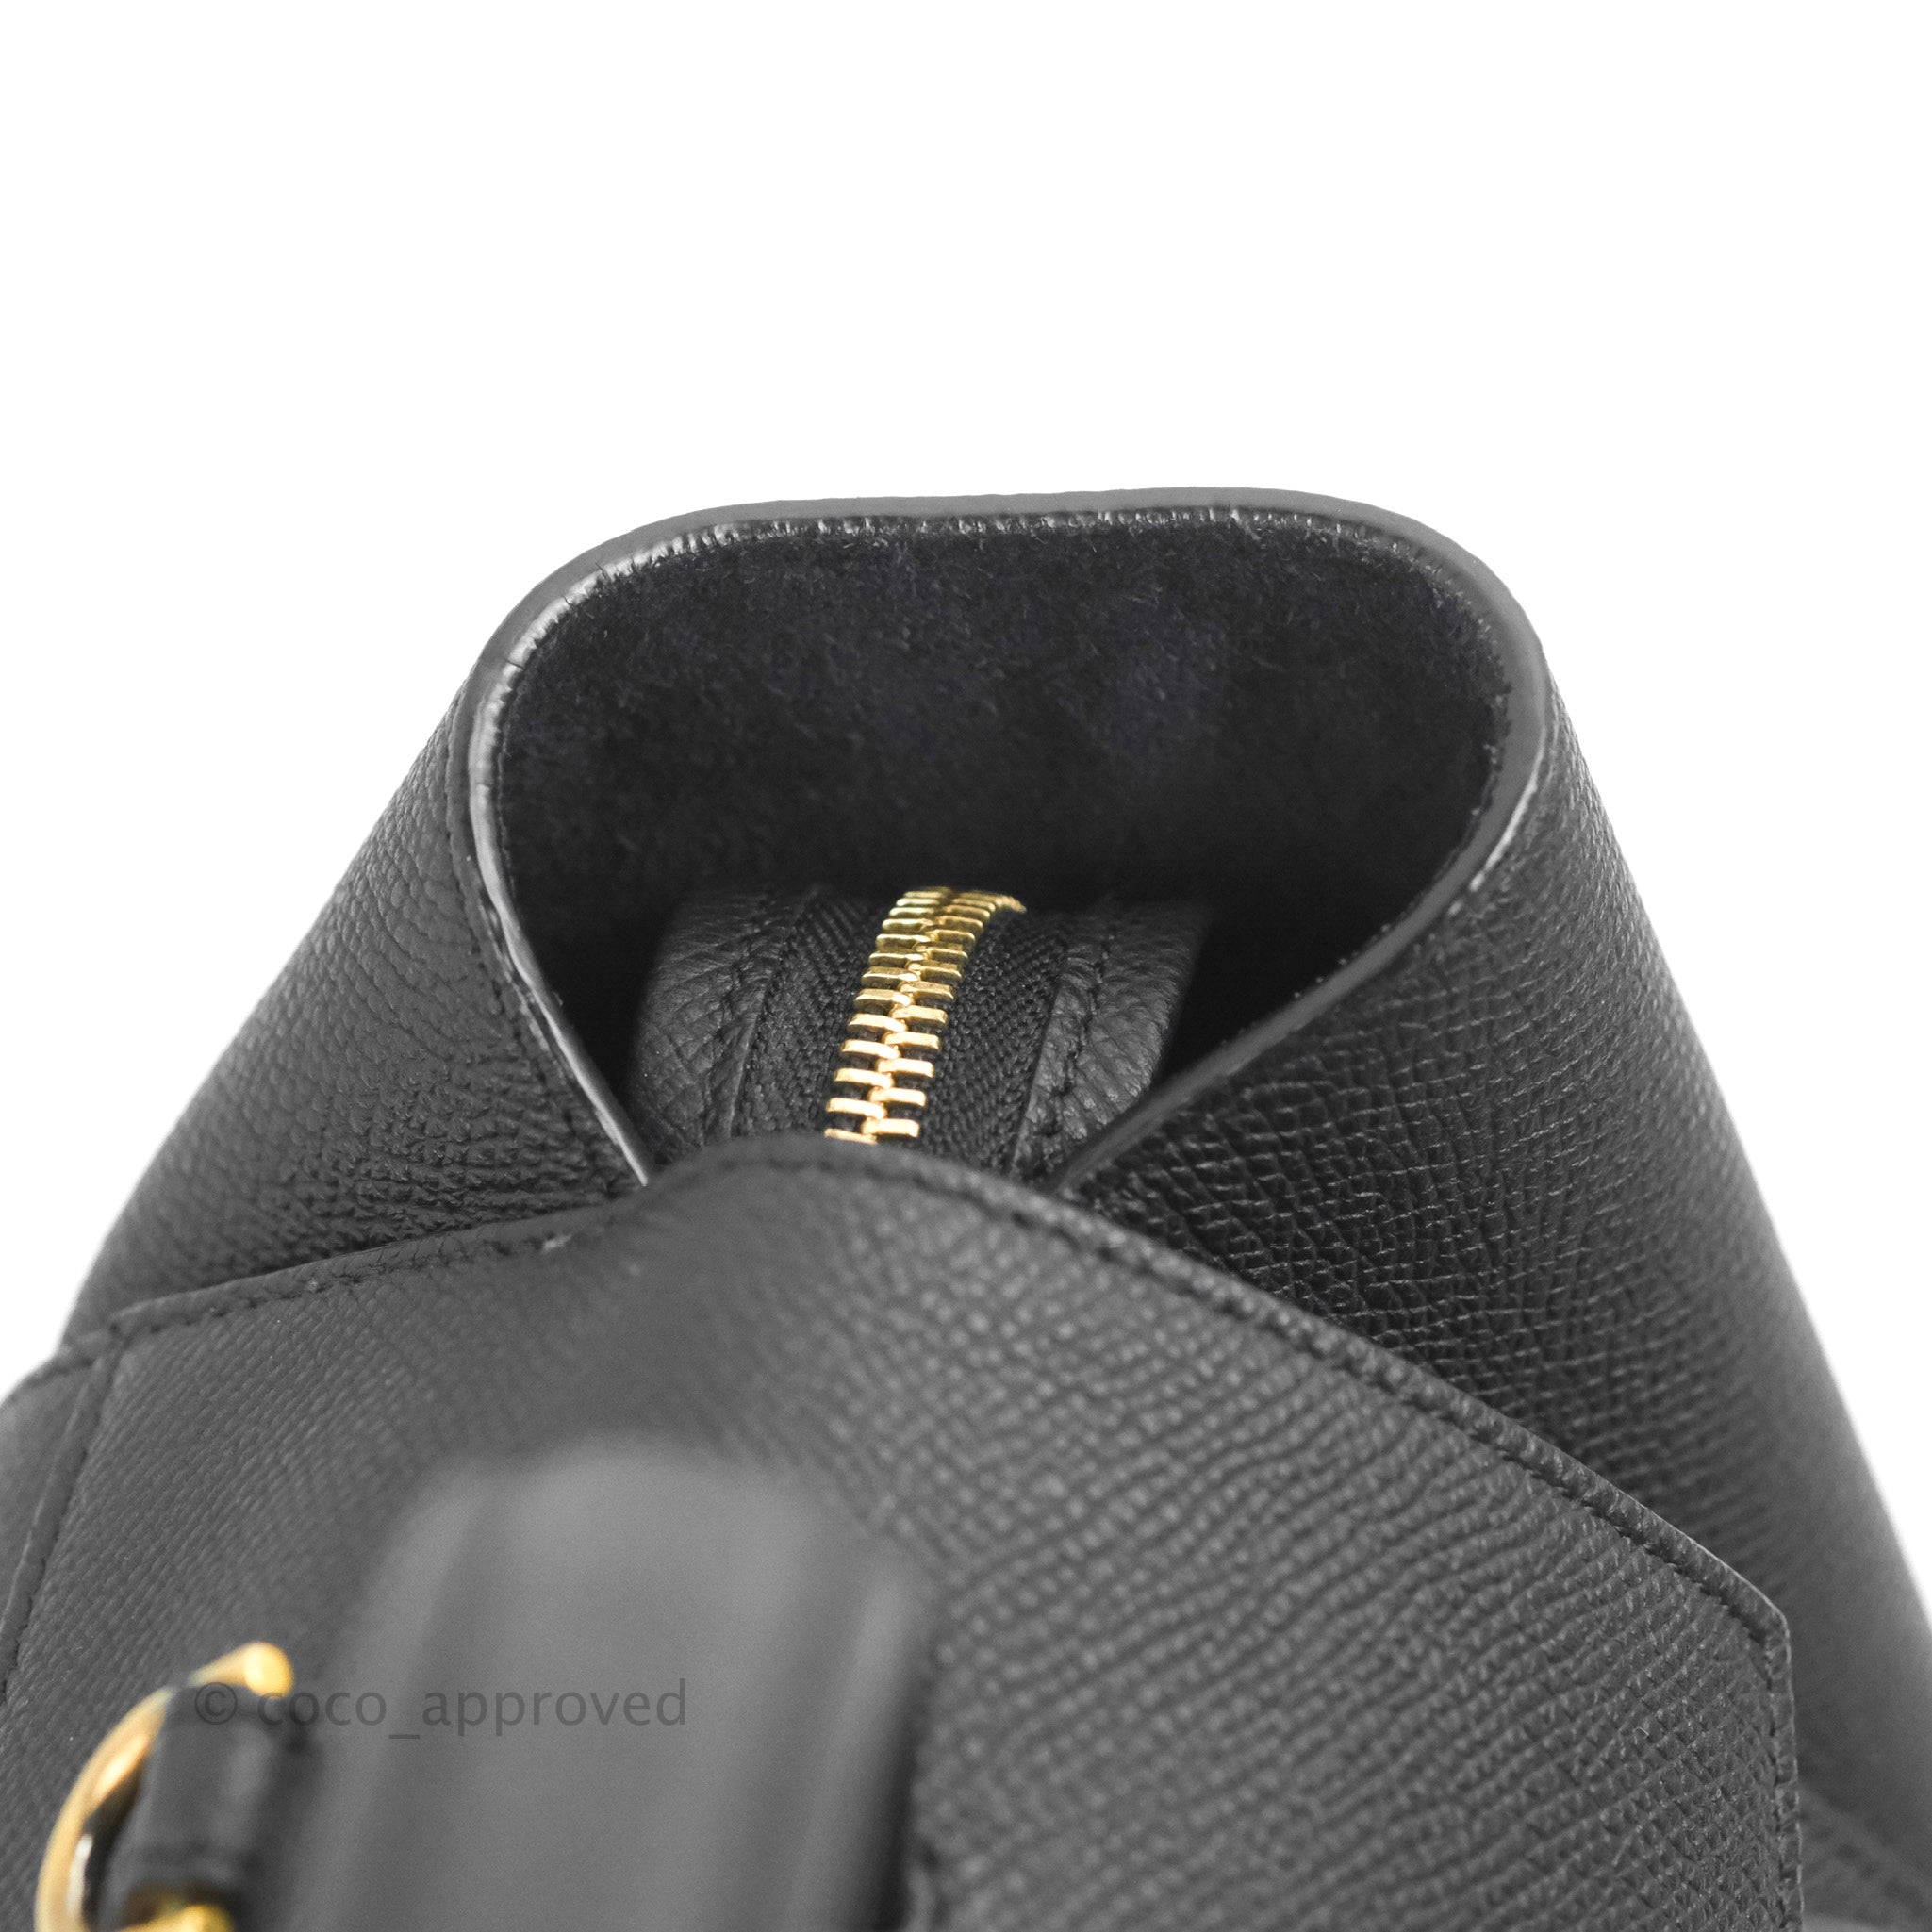 CELINE Grained Calfskin Mini Belt Bag Black 1220541